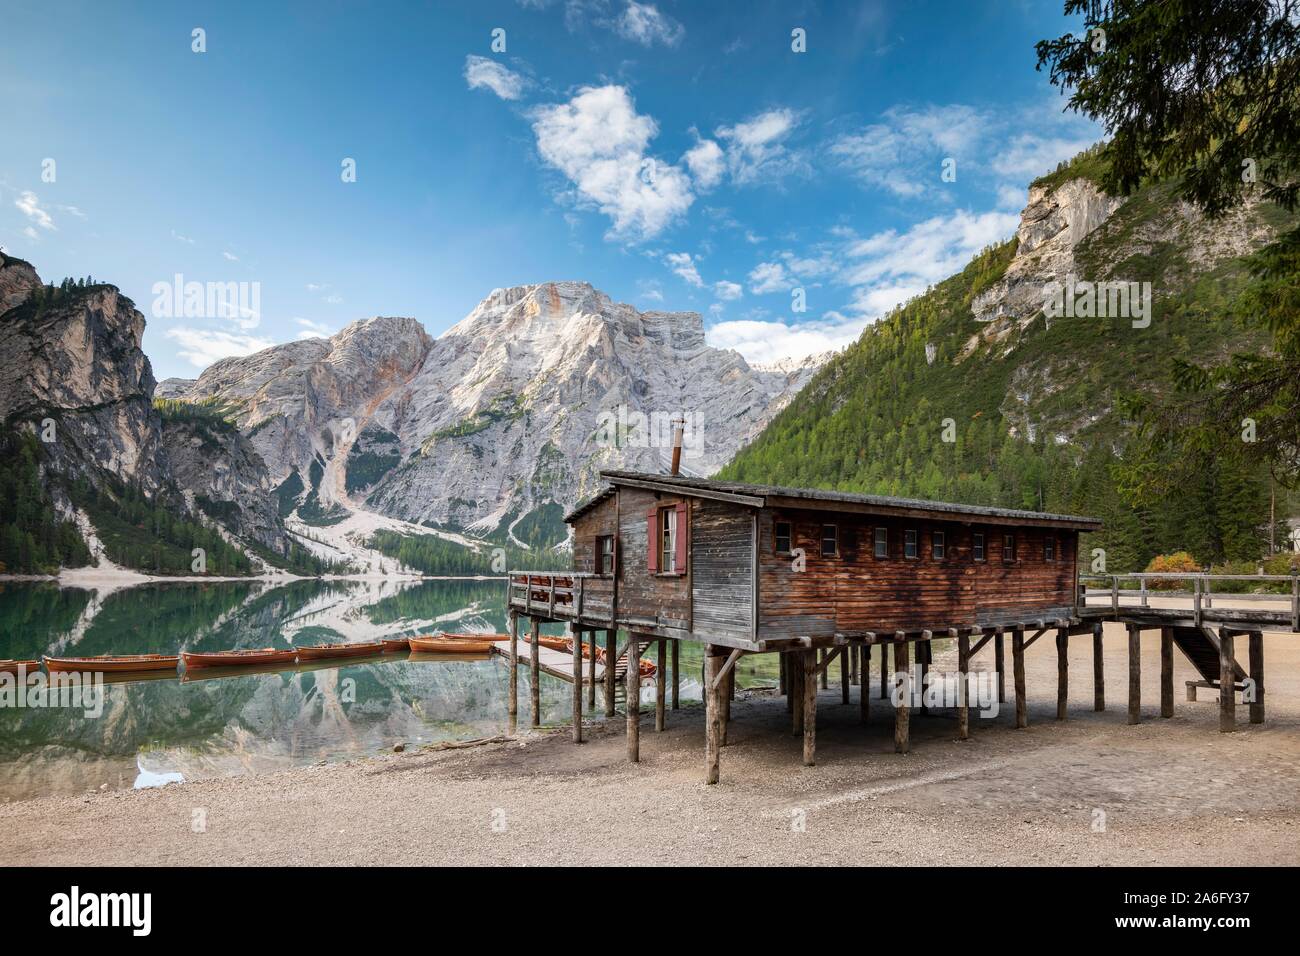 Lago Braies, lago de montaña con el boathouse y barcos, detrás de él, Prags Seekofel, dolomitas, Tirol del Sur, el Alto Adige, Italia Foto de stock